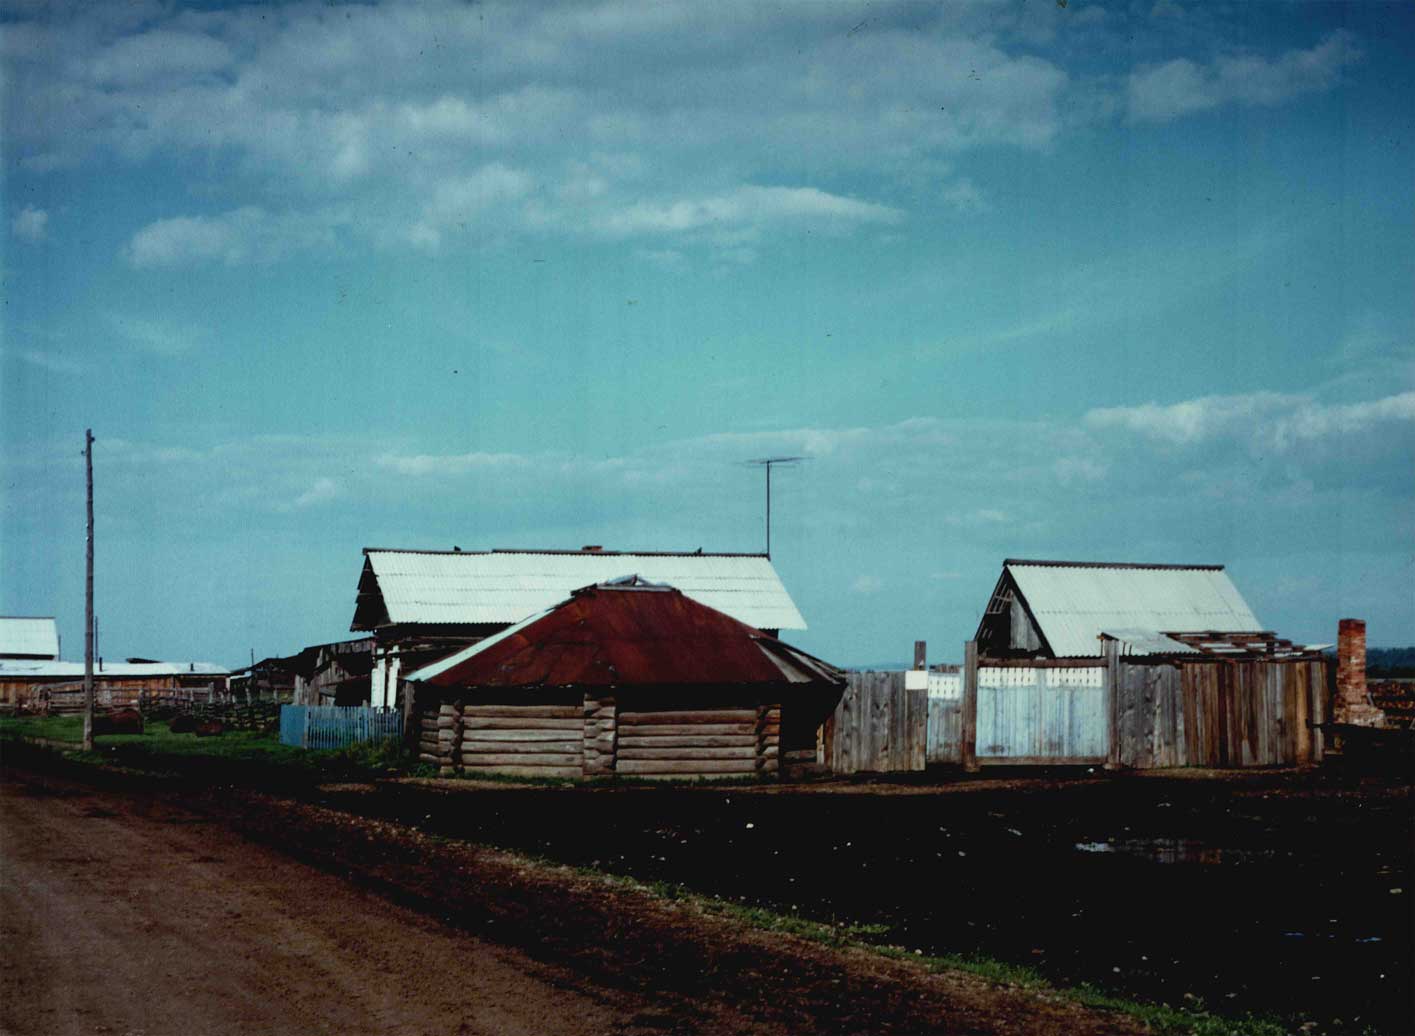 (Nyári) kerekház nyugat-burját faluban, 1998 nyara, Sántha István felvétele